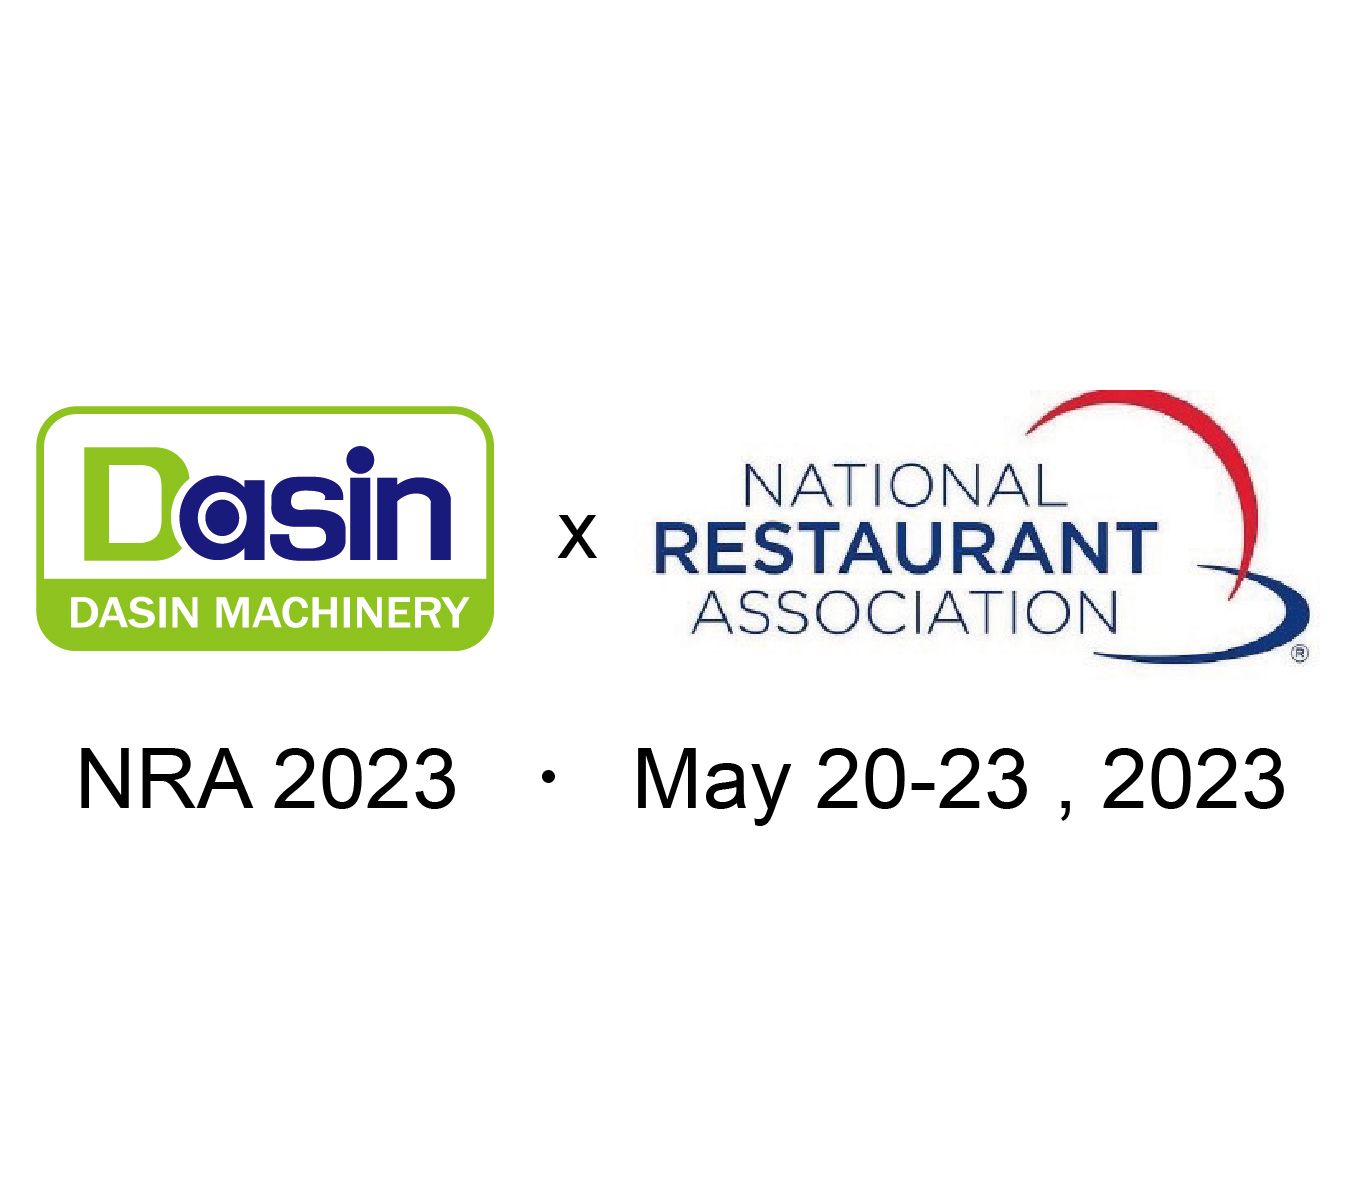 ستشارك شركة Dasin للآلات في معرض NRA لعام 2023